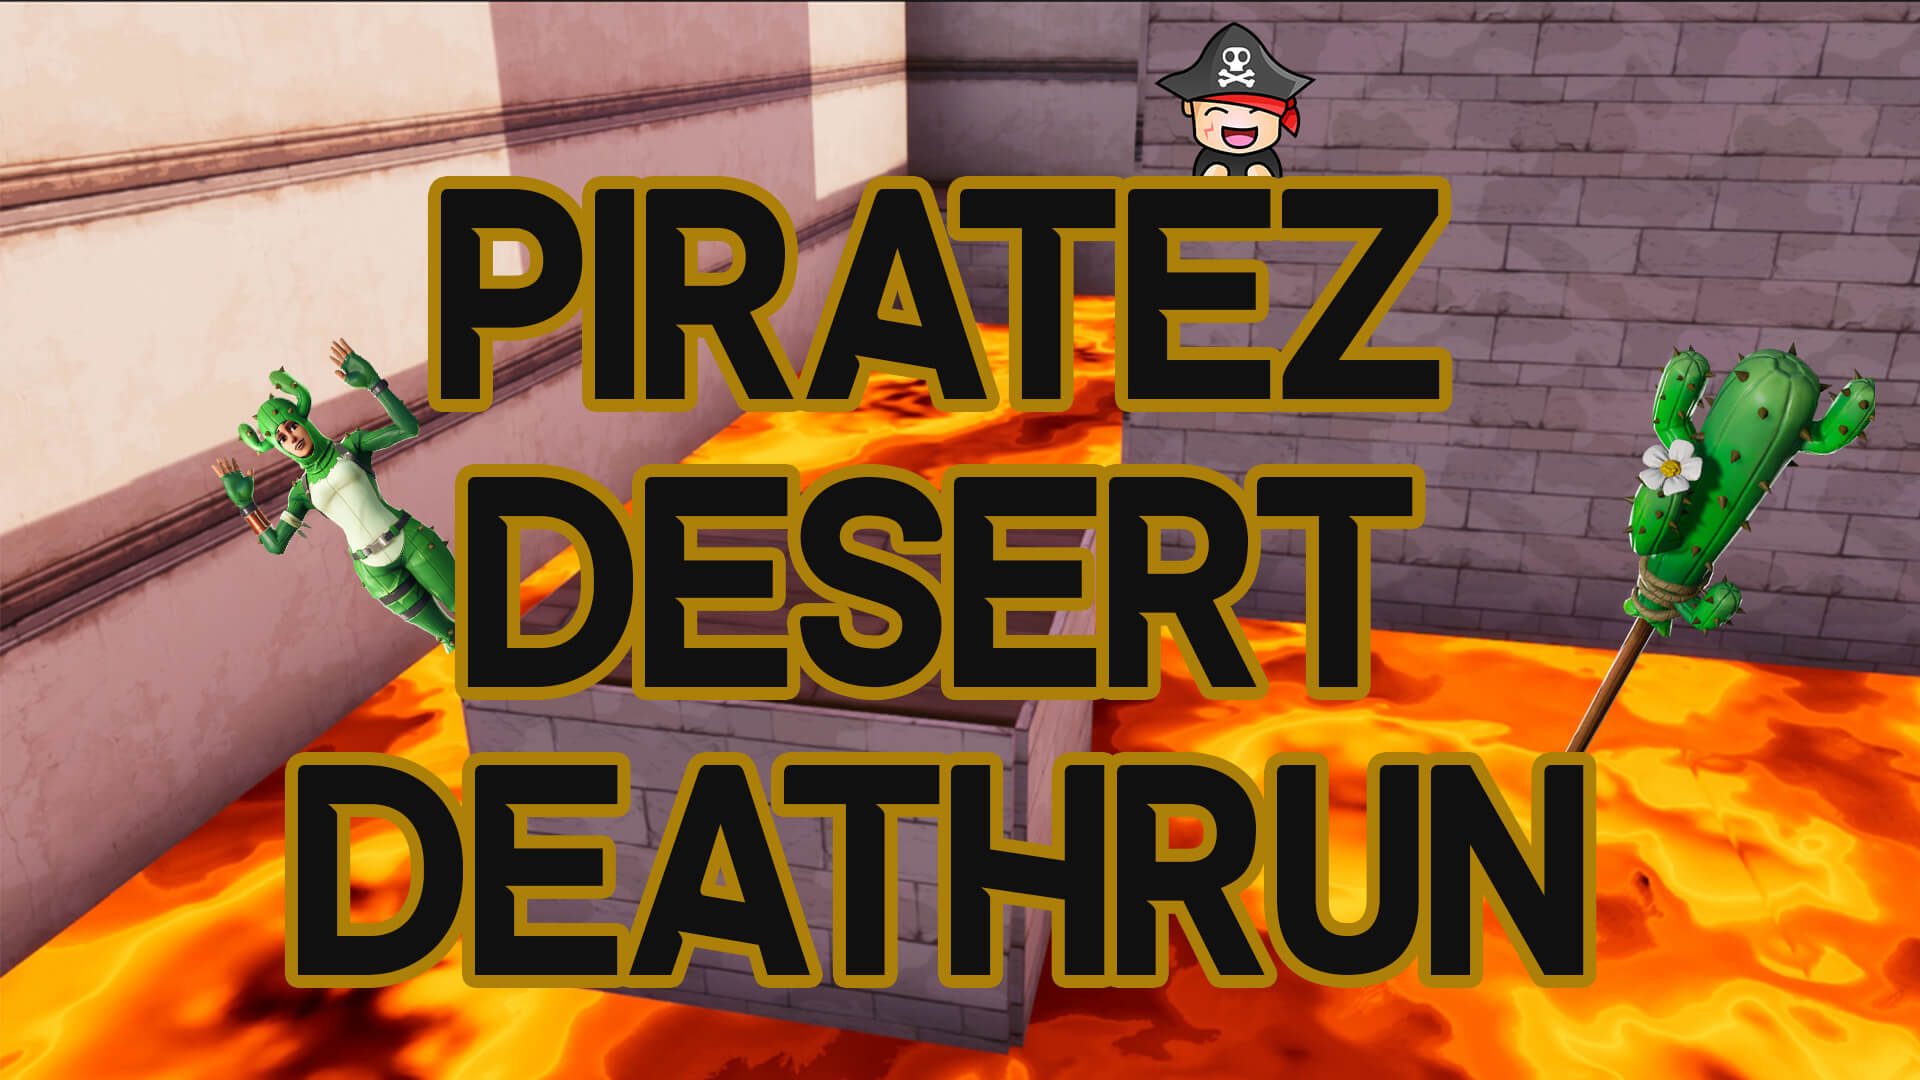 PIRATEZ DESERT DEATHRUN!